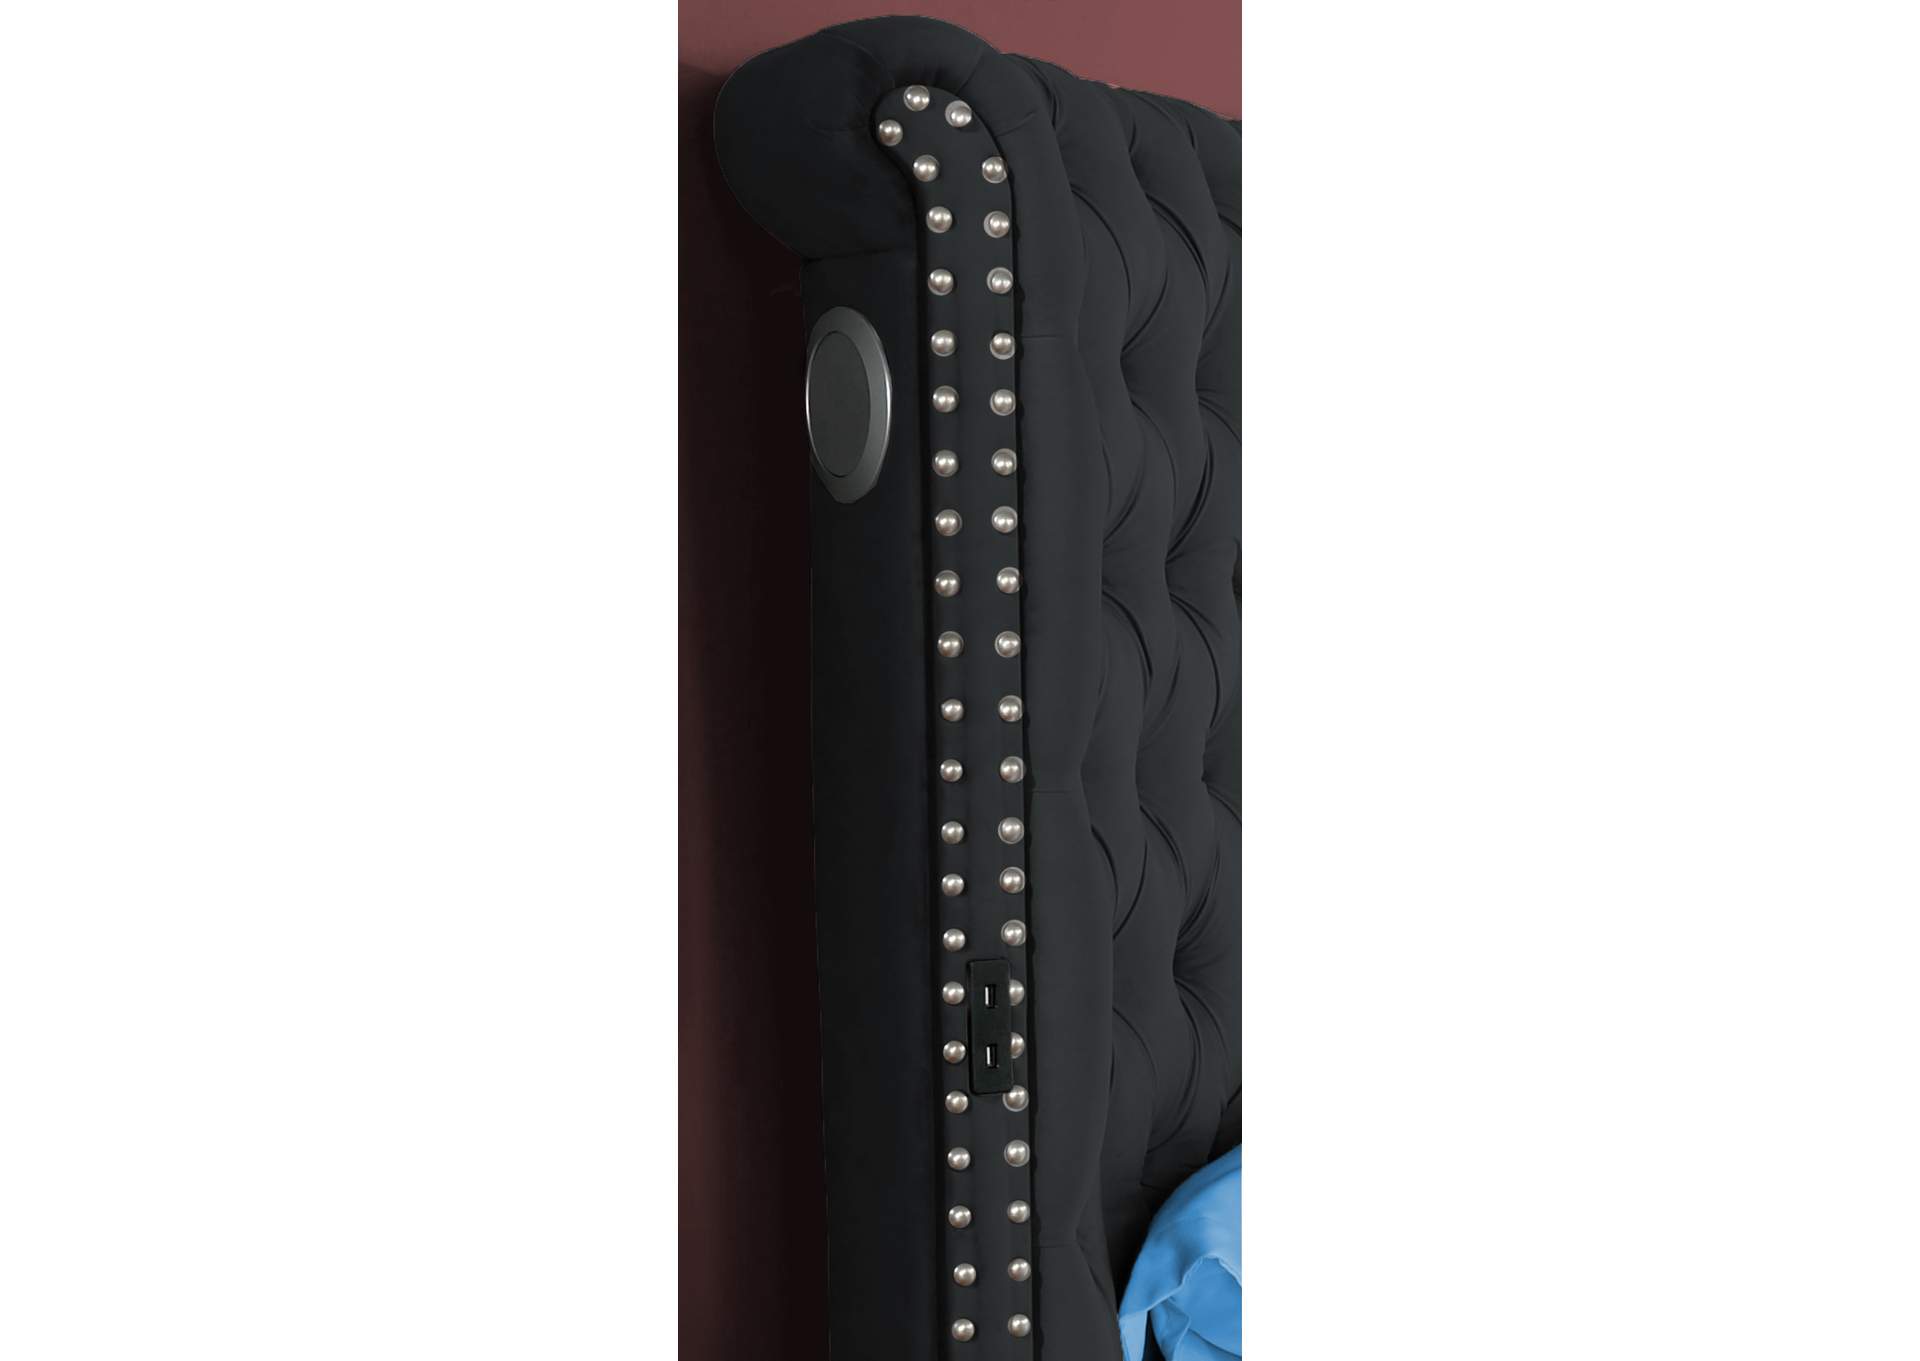 Kingsfort Black Velvet Queen Bed w/ USB & Speaker,Titanic Furniture